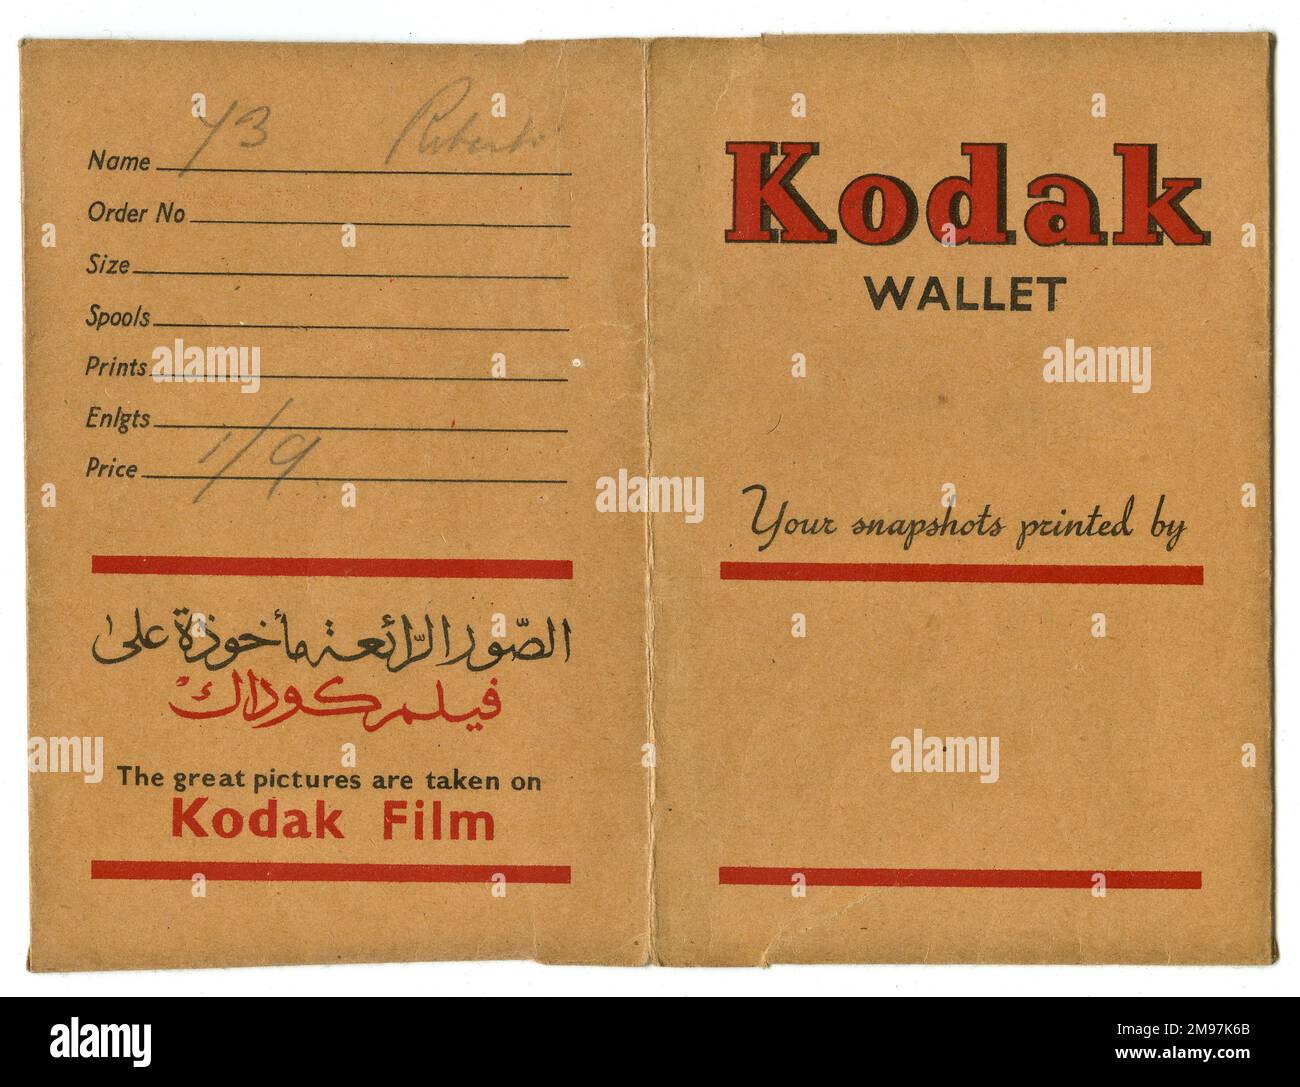 Cartera fotográfica de la película, publicidad de Kodak Film, incluyendo algunas palabras en árabe. El nombre del cliente es Roberts, y el costo de desarrollo es un chelín y ninepencia. Foto de stock